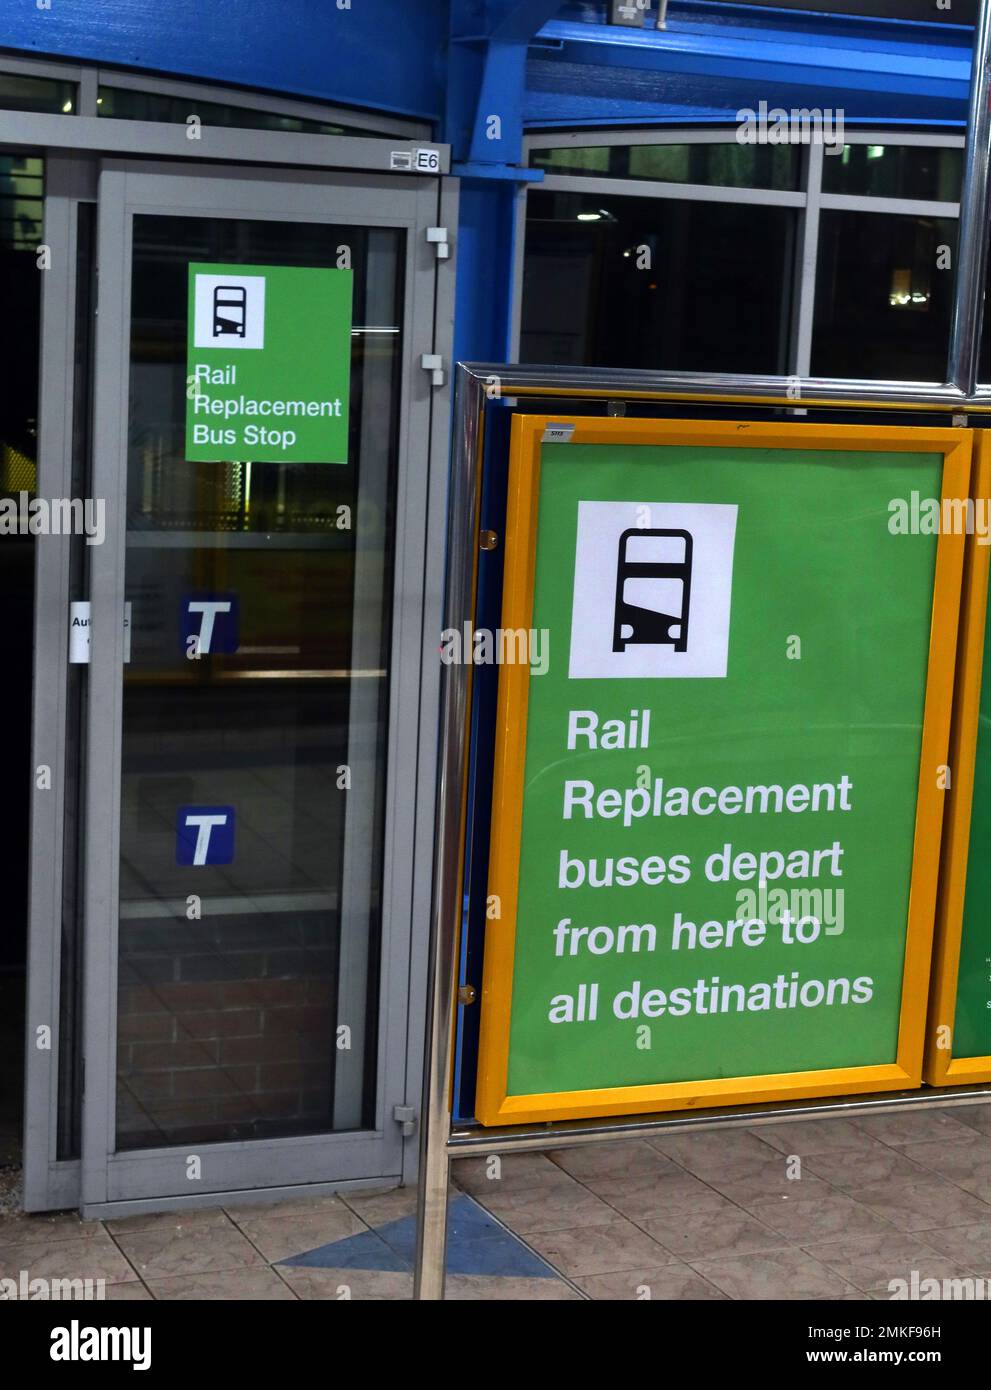 Rail Replacement Bushaltestelle, in Sheffield Interchange - Schild, das darauf hinweist, dass die Busse von hier zu allen Zielen fahren Stockfoto